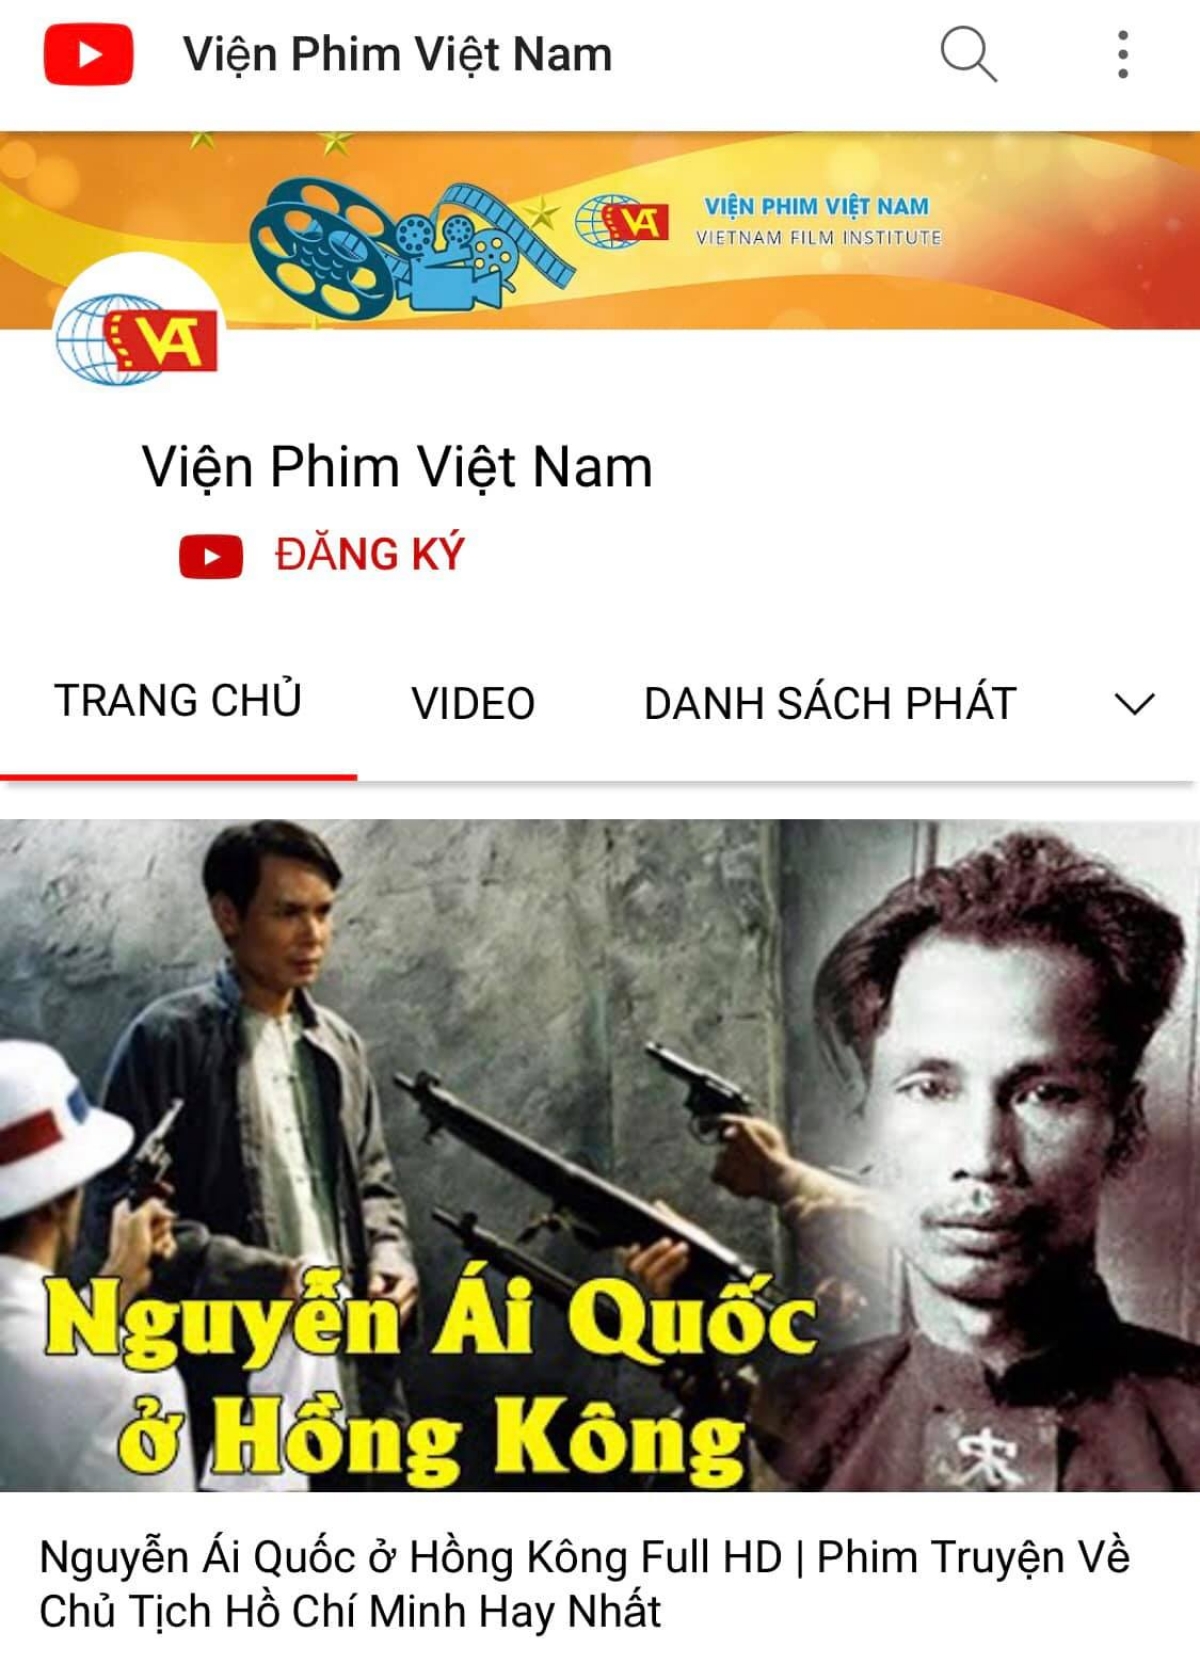 Hãy giành thời gian thưởng thức những bộ phim Việt đầy cảm xúc, chất lượng và ý nghĩa về một mảnh đất và một dân tộc tràn đầy cảm hứng.